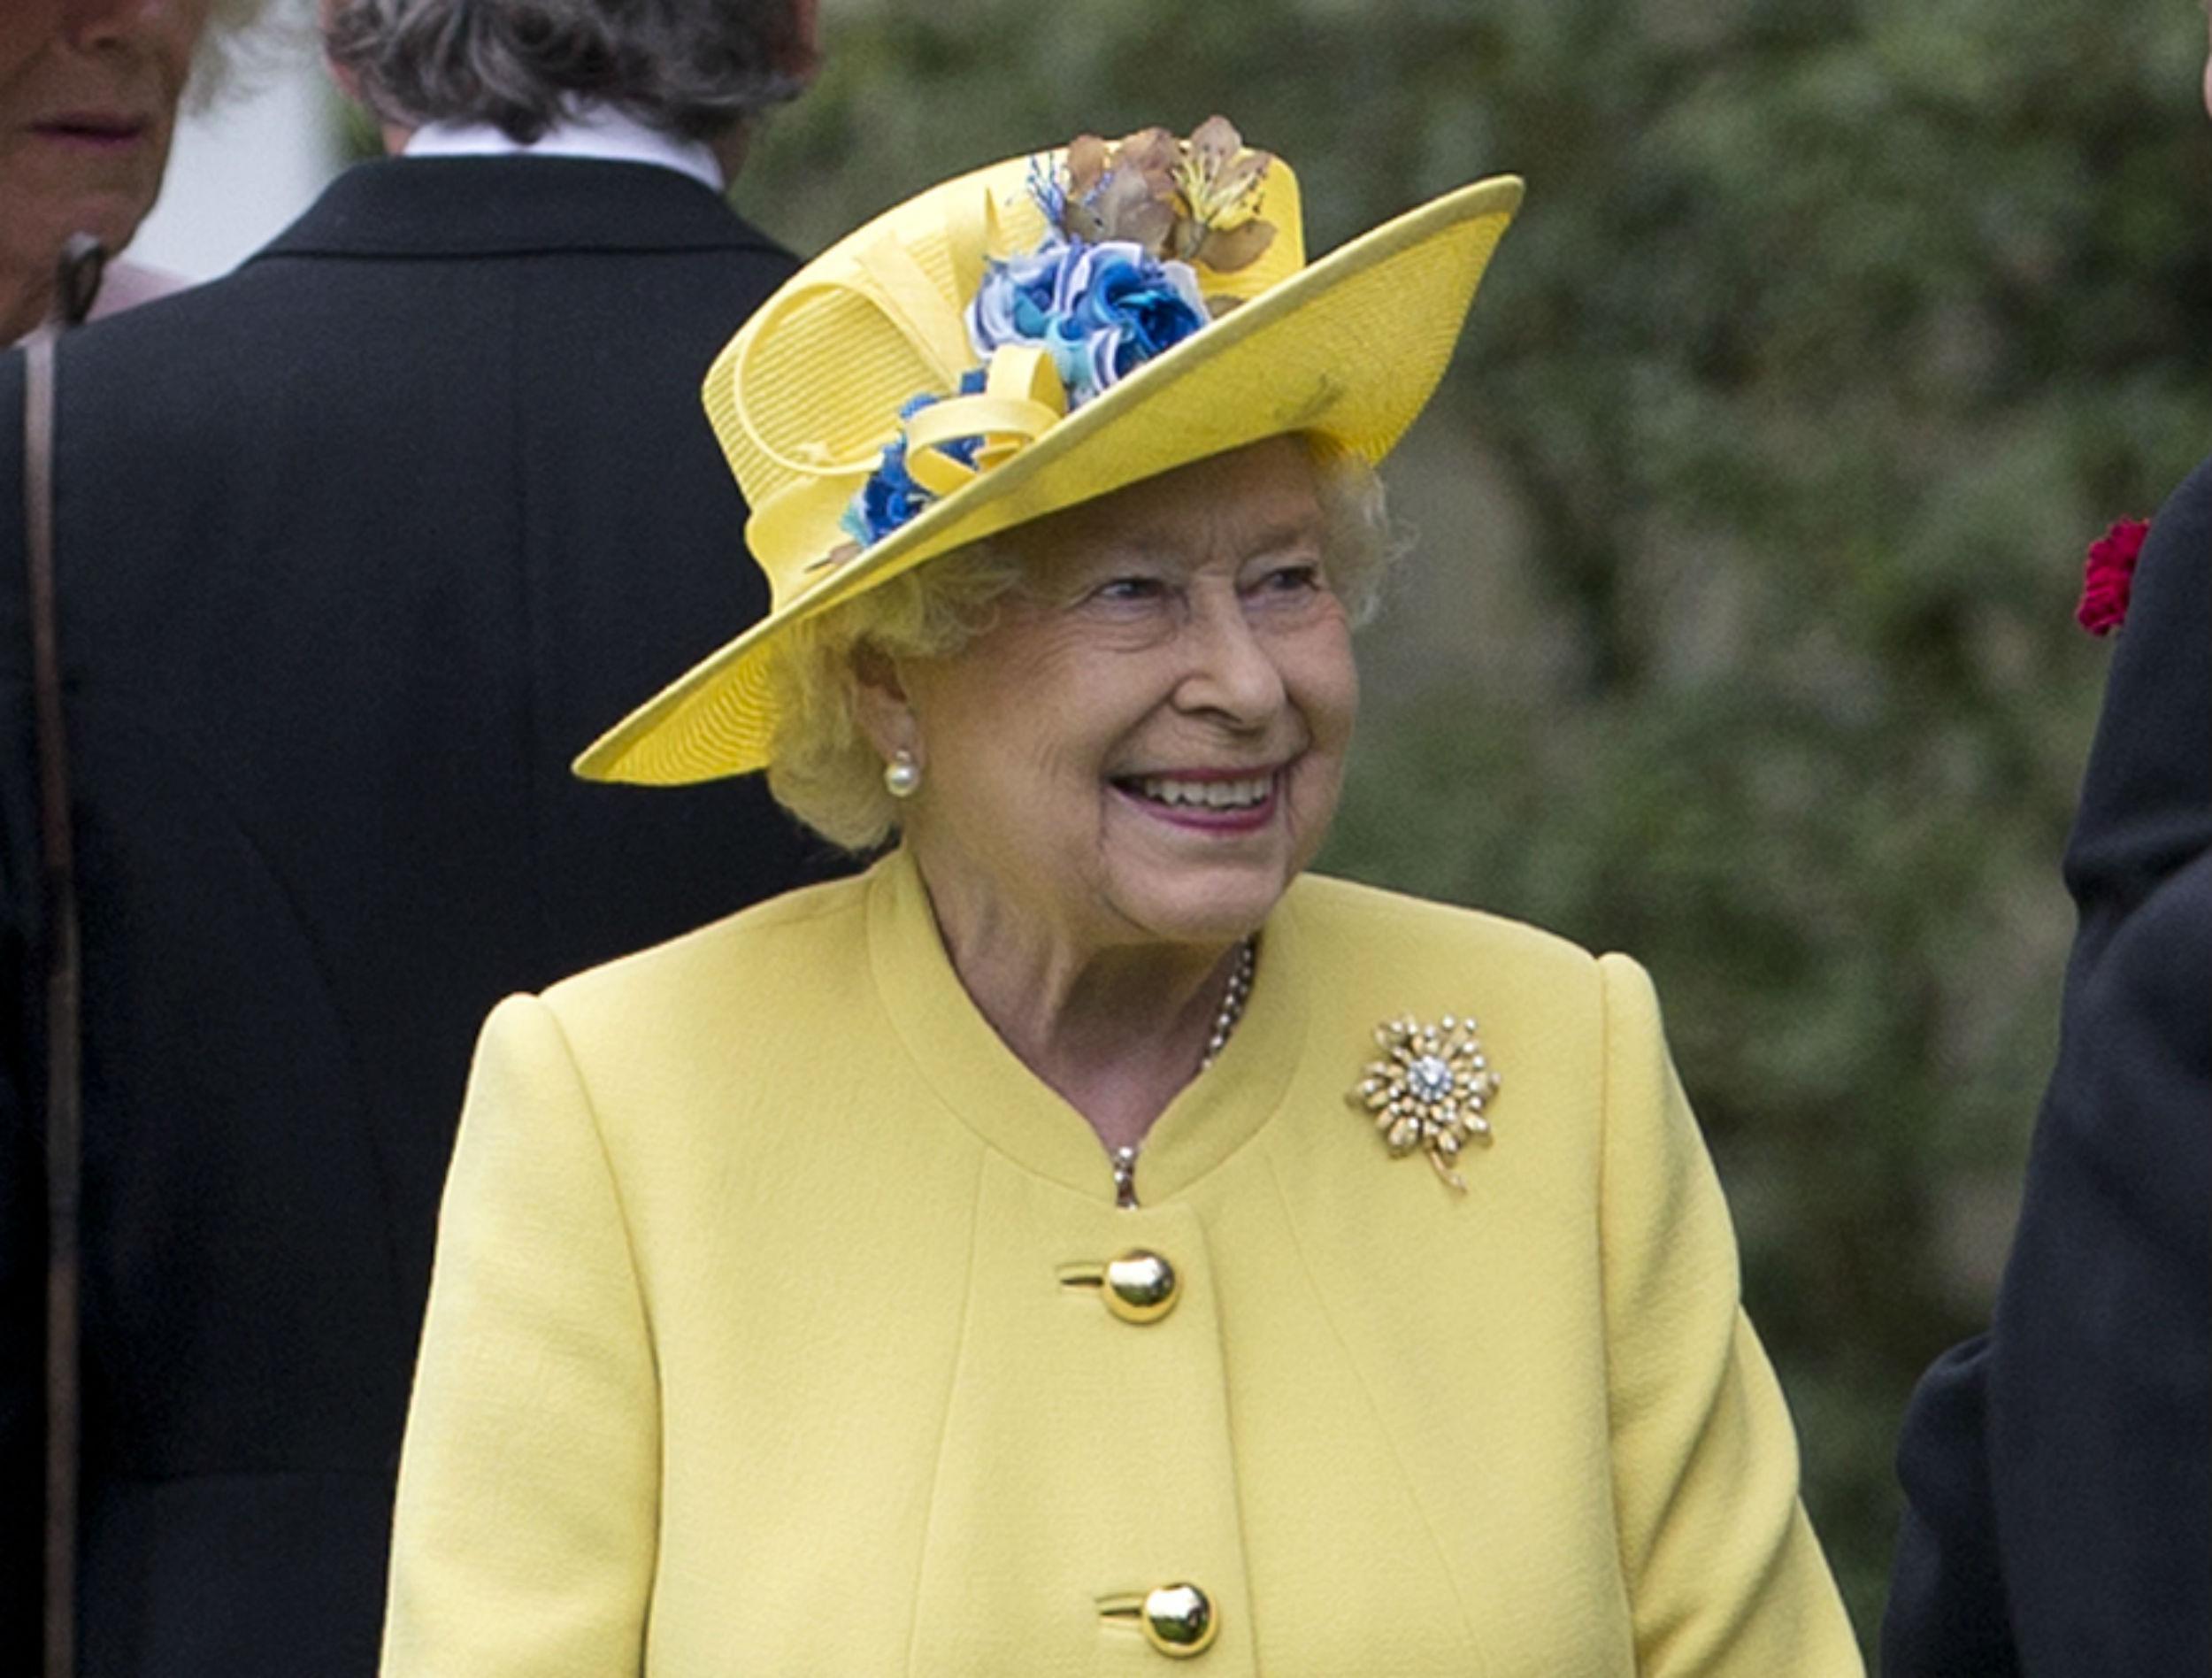 Il cappellino giallo scelto dalla regina Elisabetta II per l'inaugurazione del Royal Ascot (foto Afp)